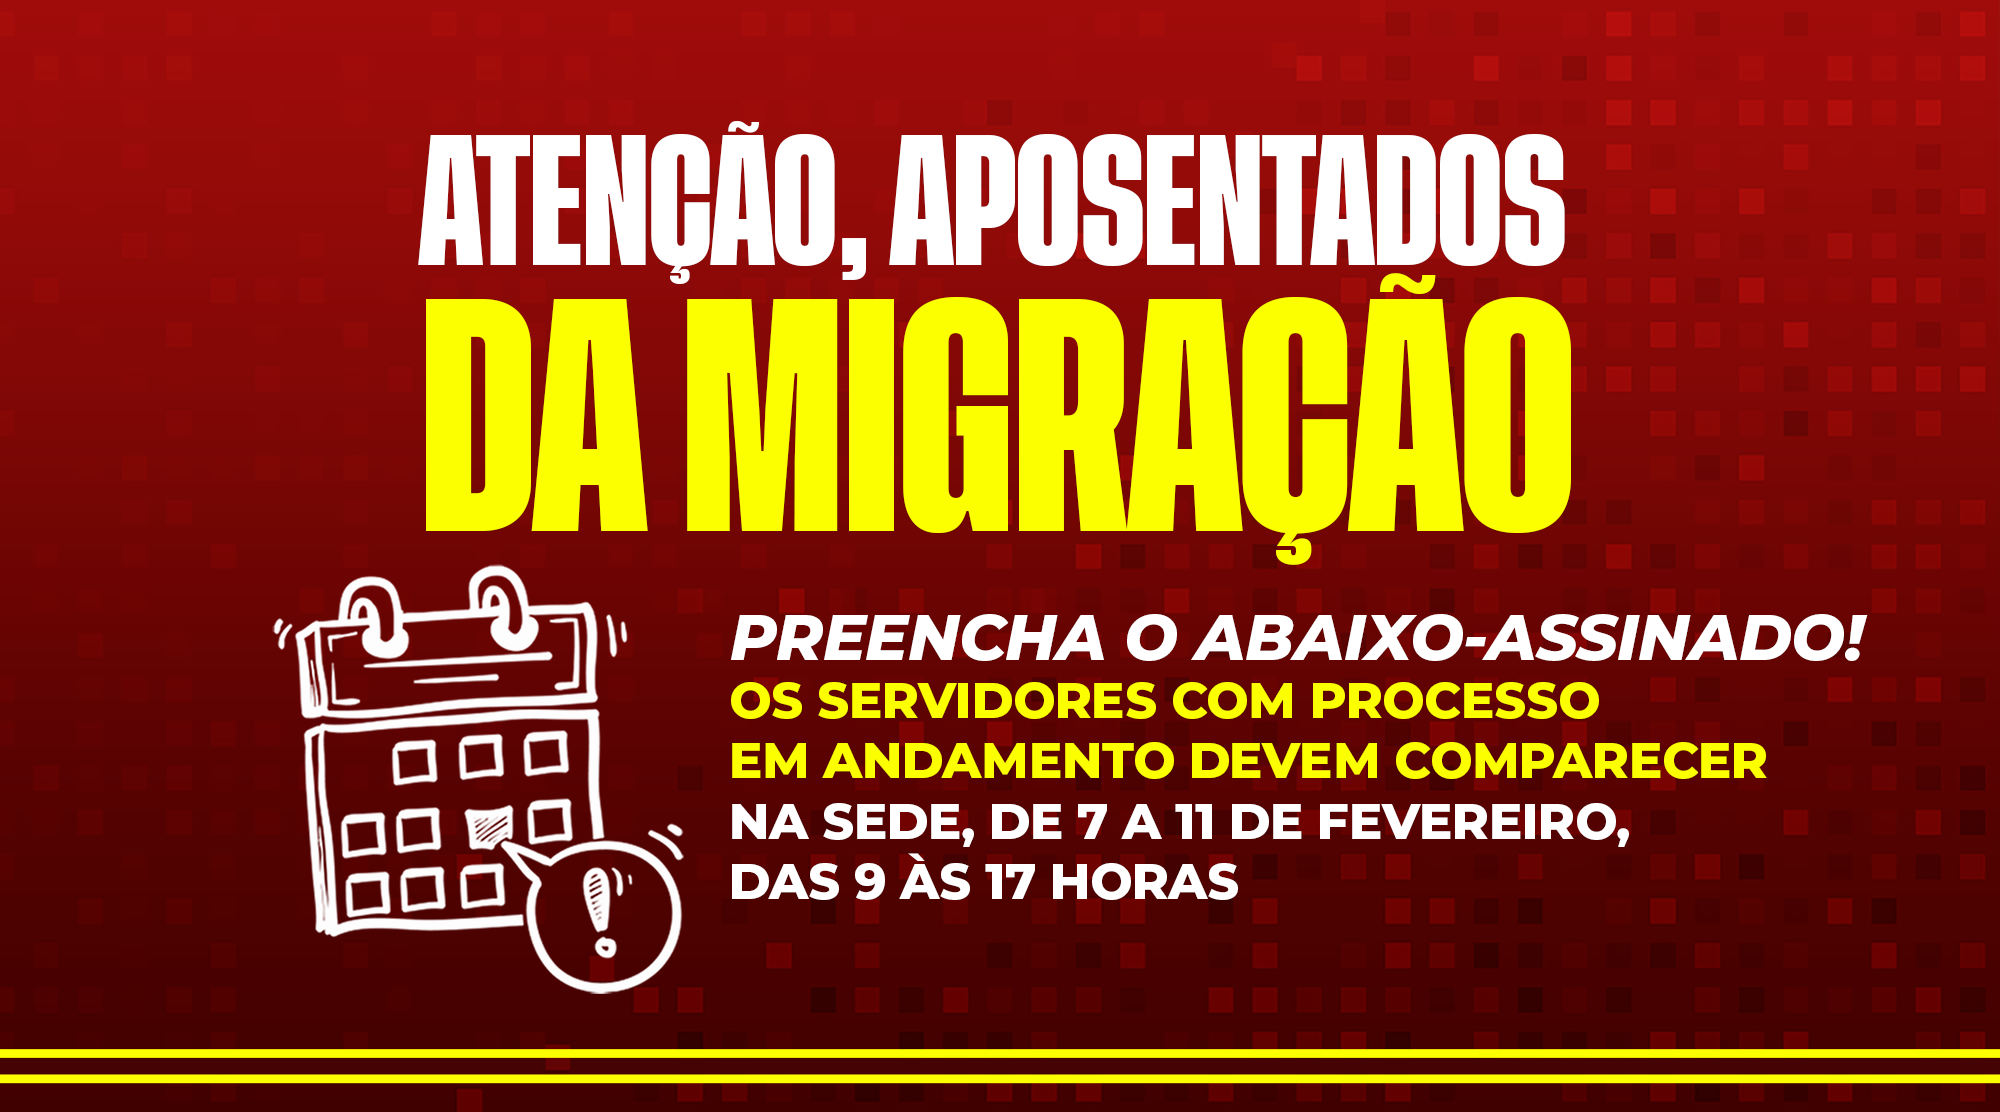 Servidores Aposentados da Migração | Venham até a sede e preencham nosso Abaixo-Assinado